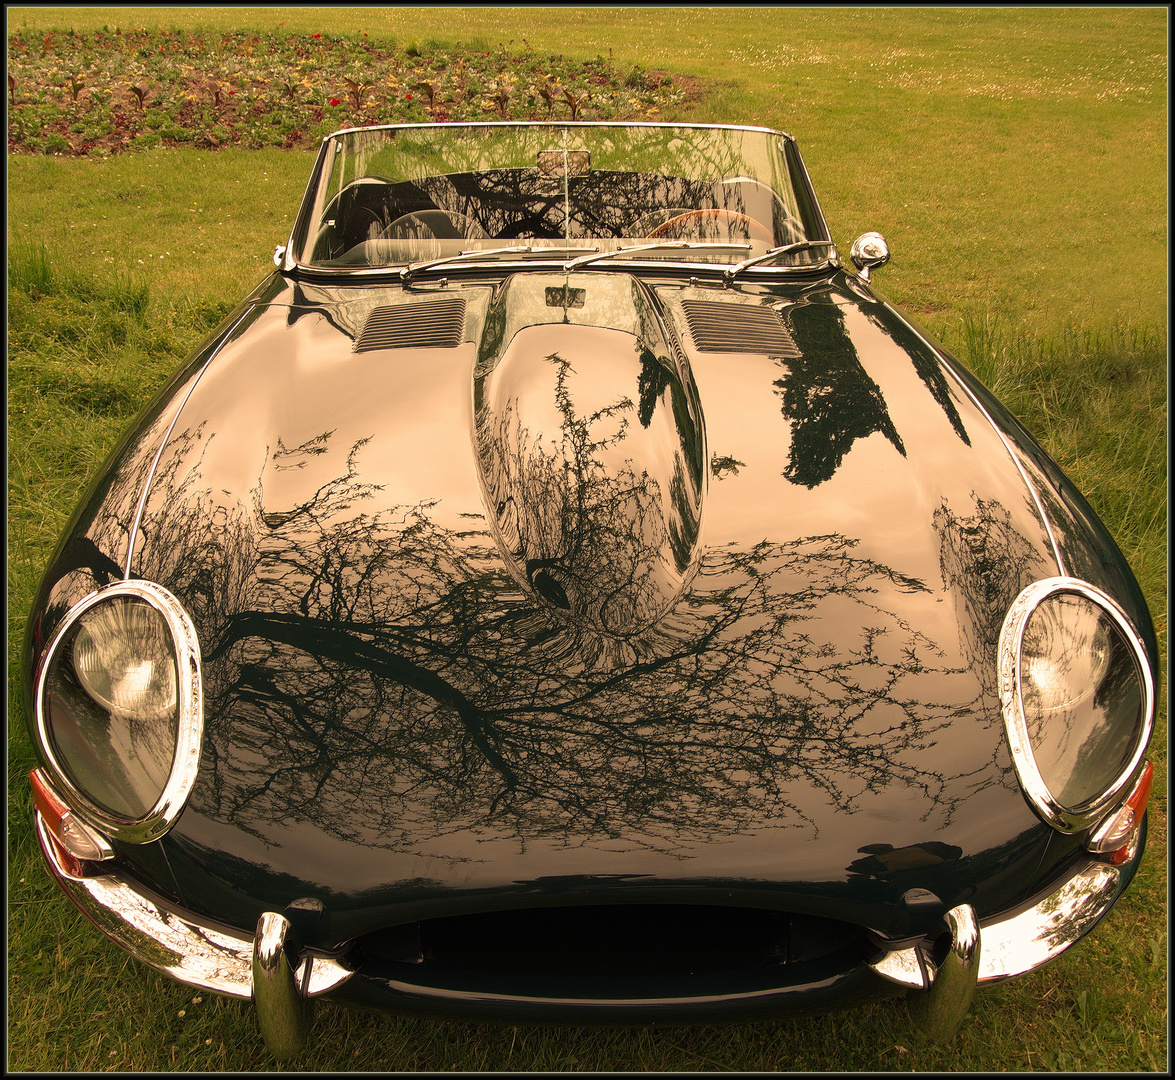 Jaguar Type E